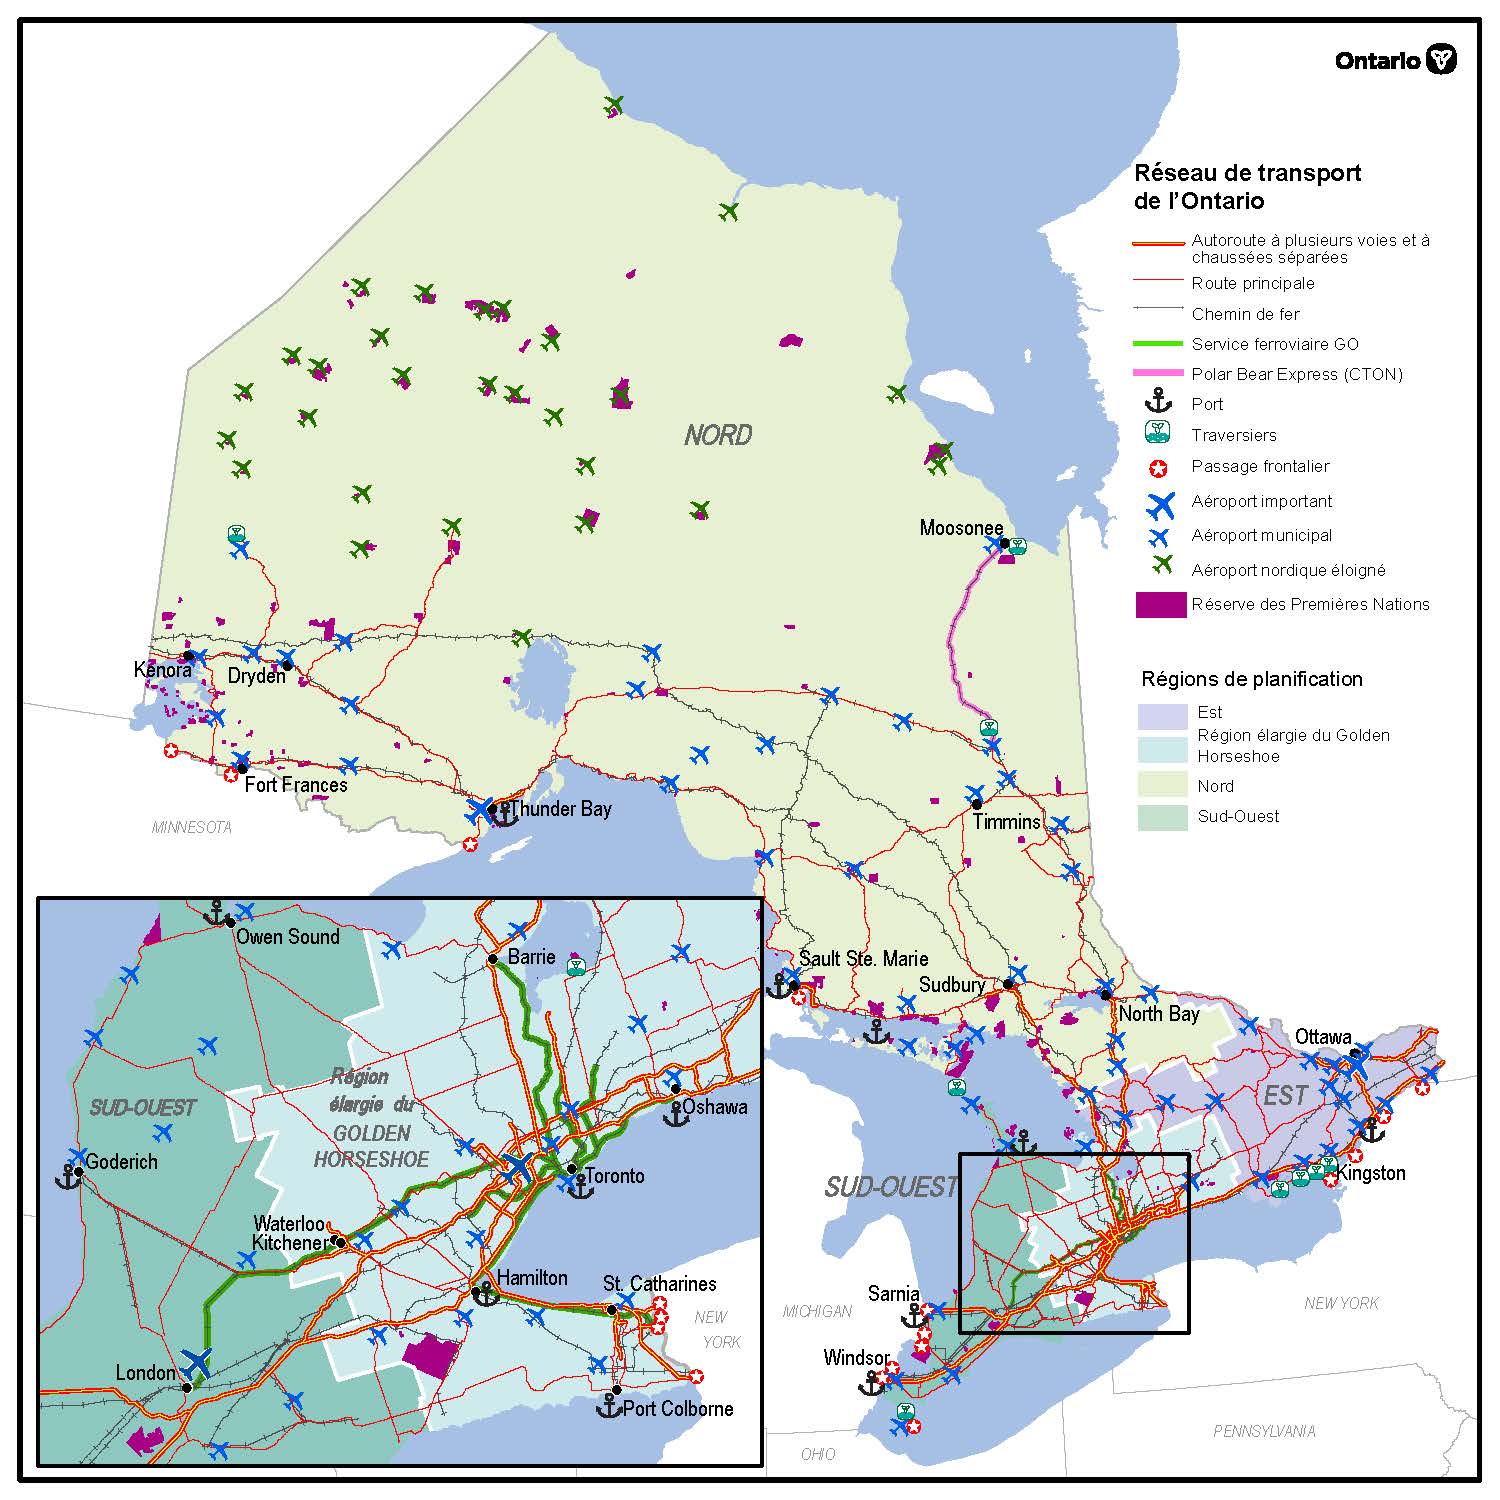 Carte montrant le réseau de transport de l’Ontario, y compris les autoroutes, les chemins de fer, les ports, les traversiers, les postes frontières et les aéroports, ainsi que les zones de planification régionale et les réserves des Premières Nations.